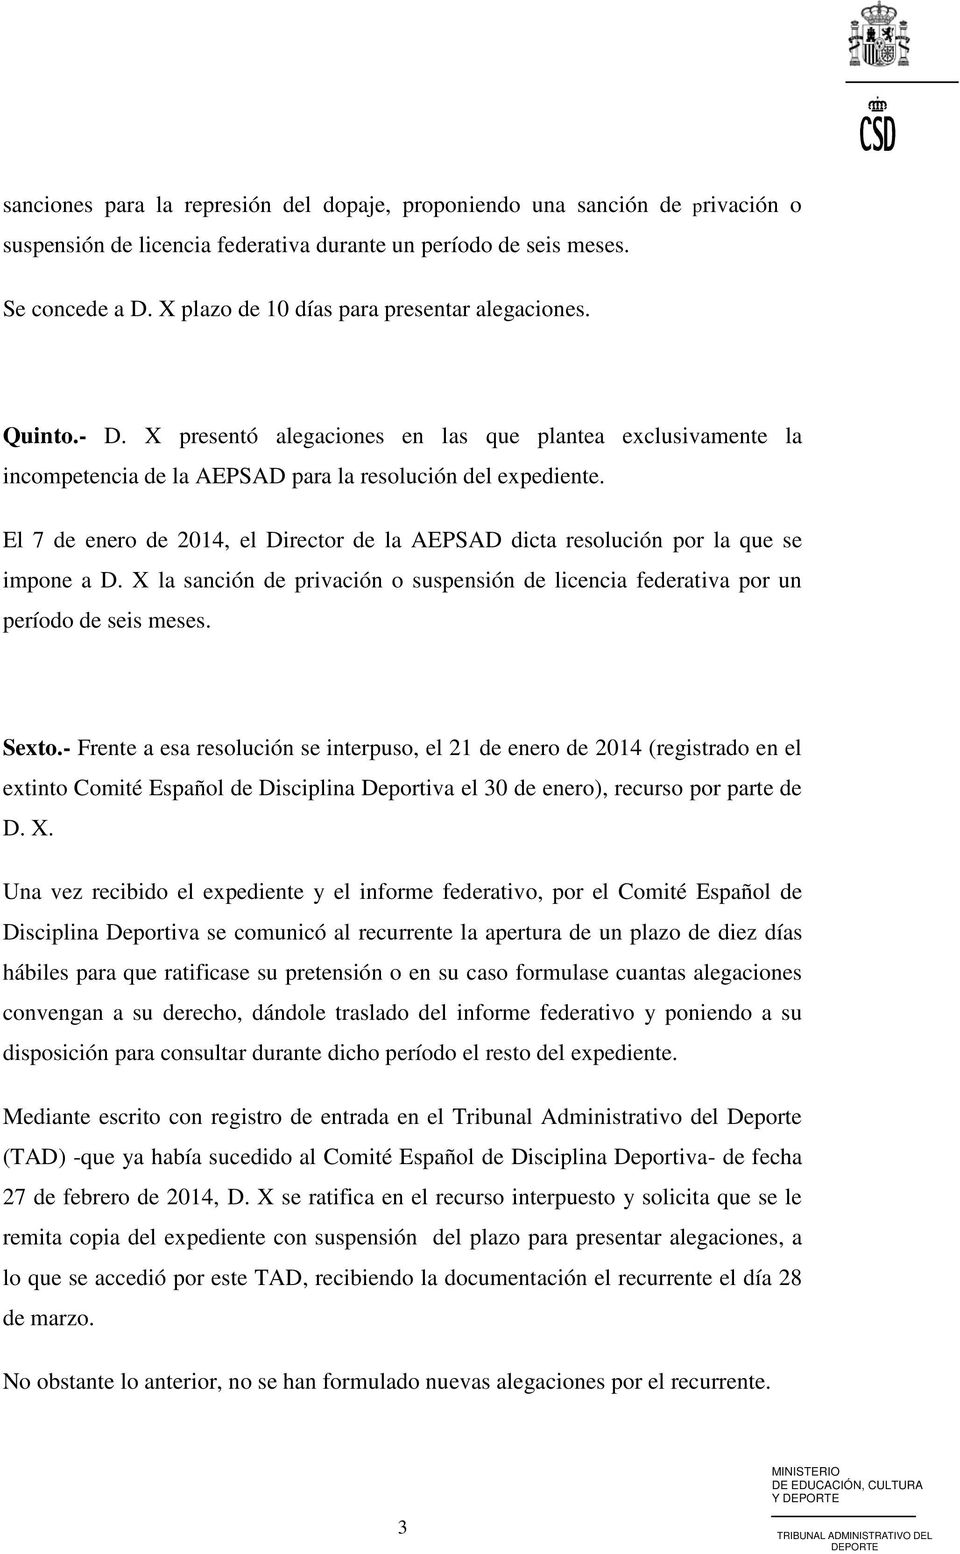 El 7 de enero de 2014, el Director de la AEPSAD dicta resolución por la que se impone a D. X la sanción de privación o suspensión de licencia federativa por un período de seis meses. Sexto.